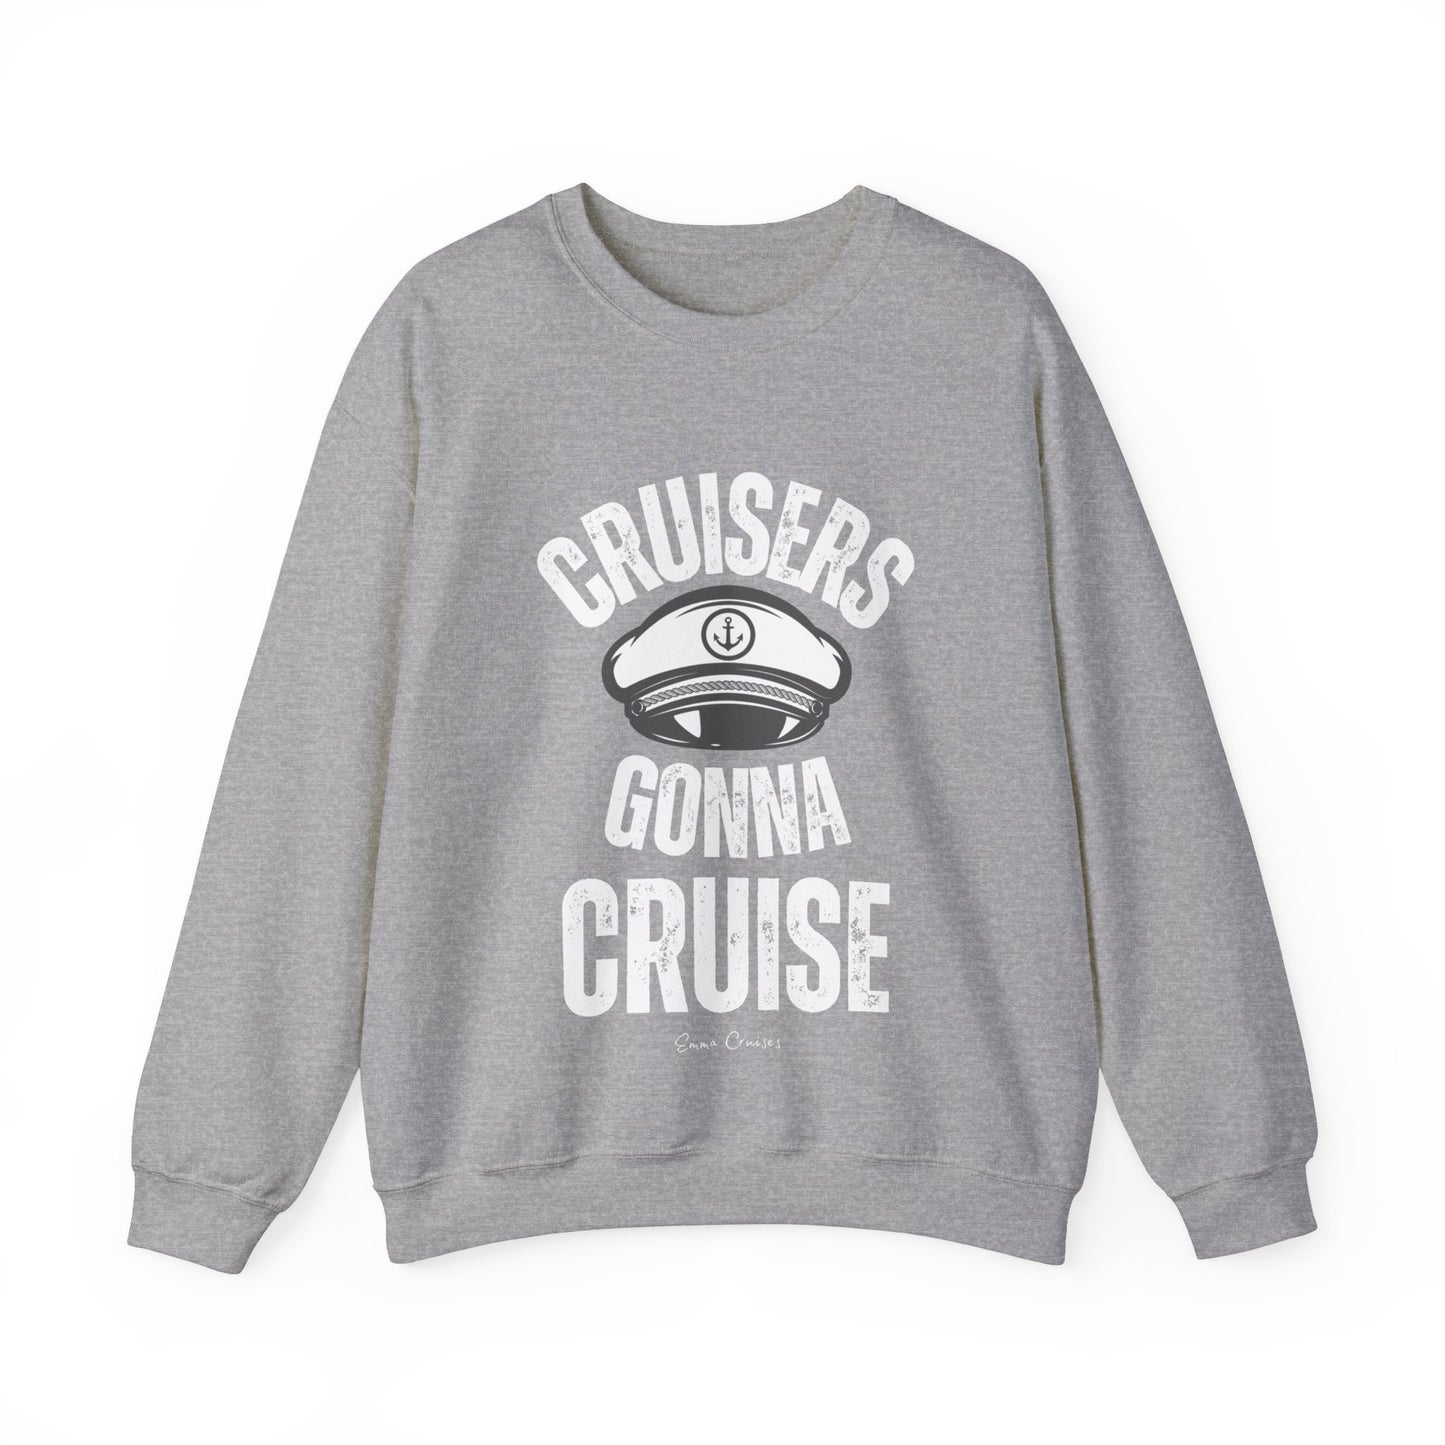 Cruisers Gonna Cruise - UNISEX Crewneck Sweatshirt